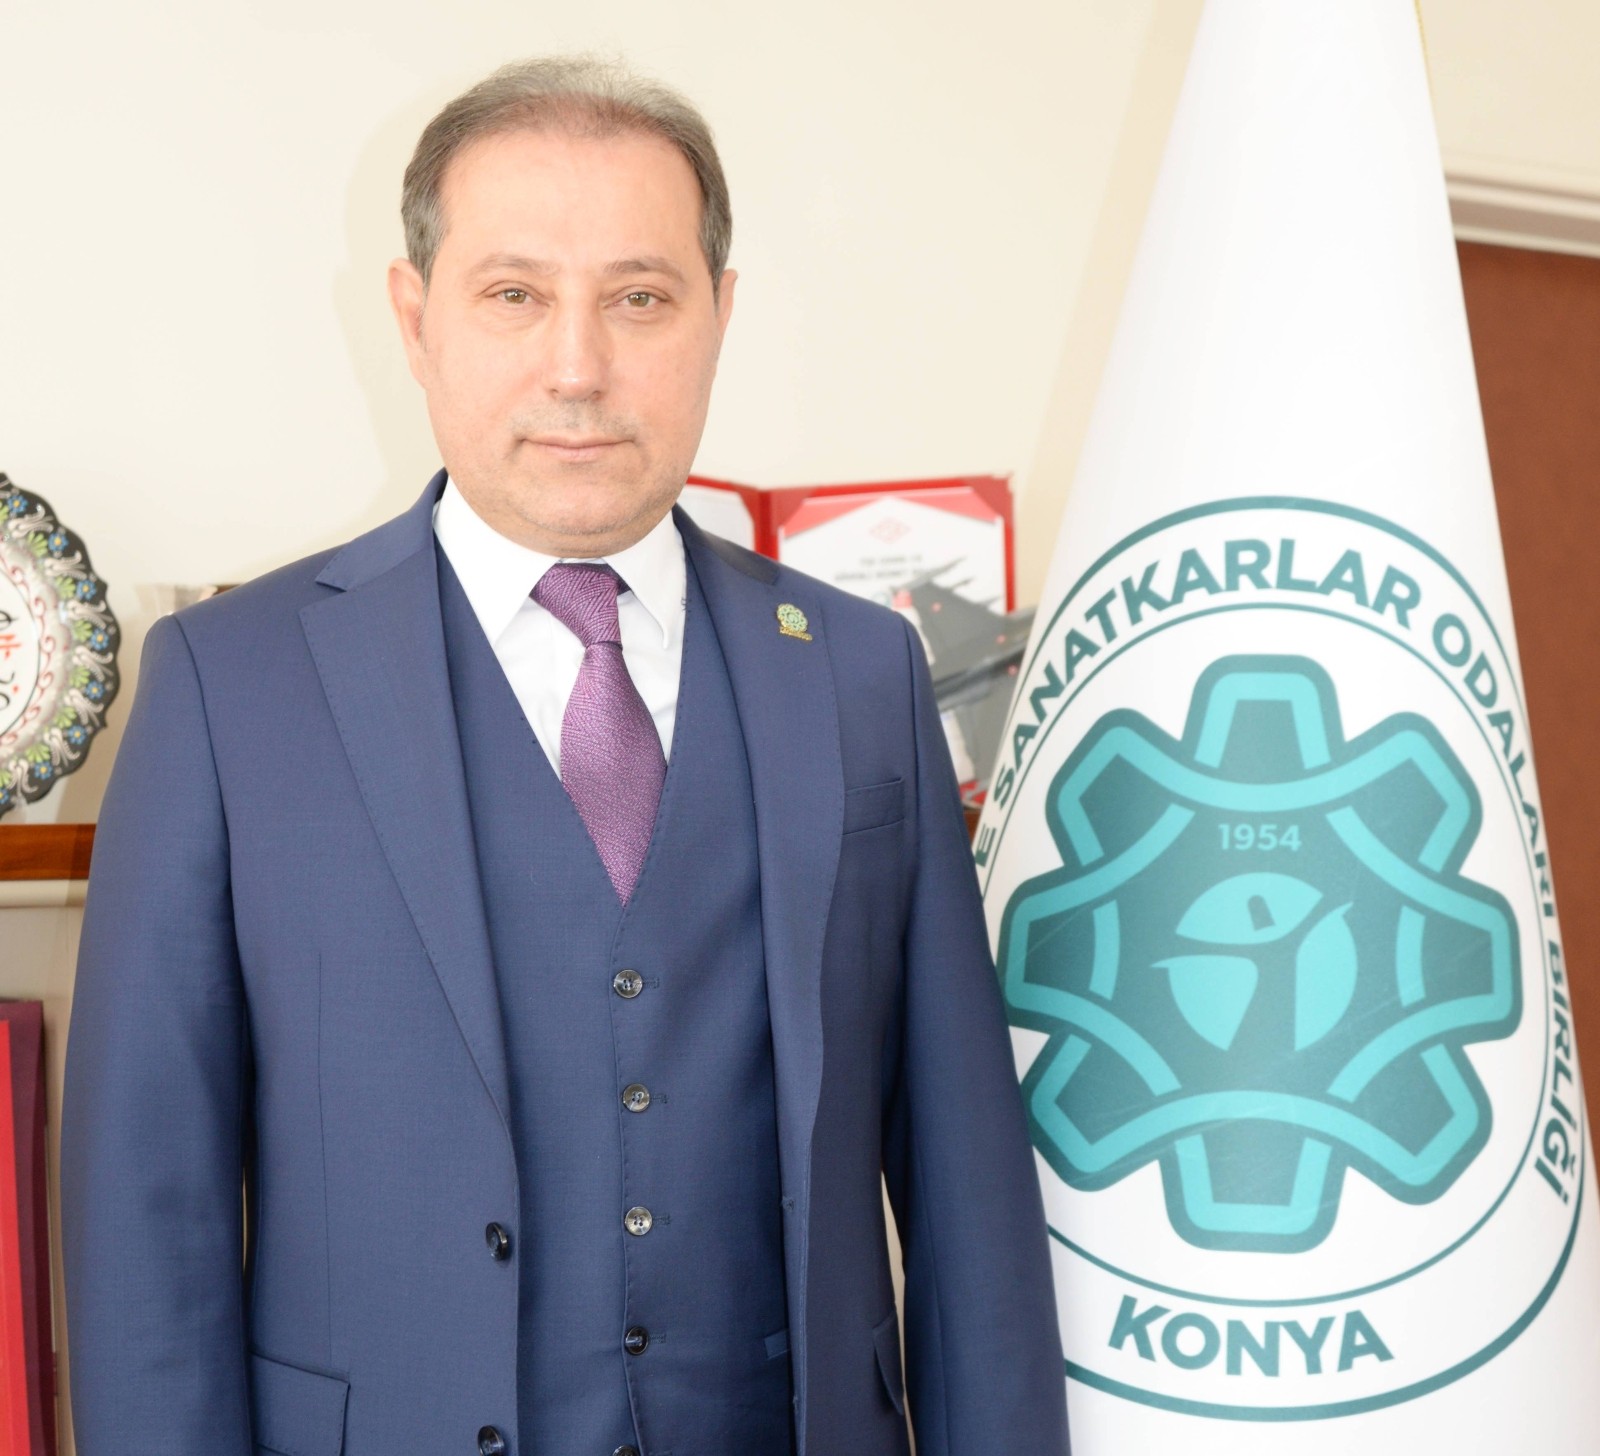 Başkan Karabacak: “Esnaflarımıza destekler sevindirdi”